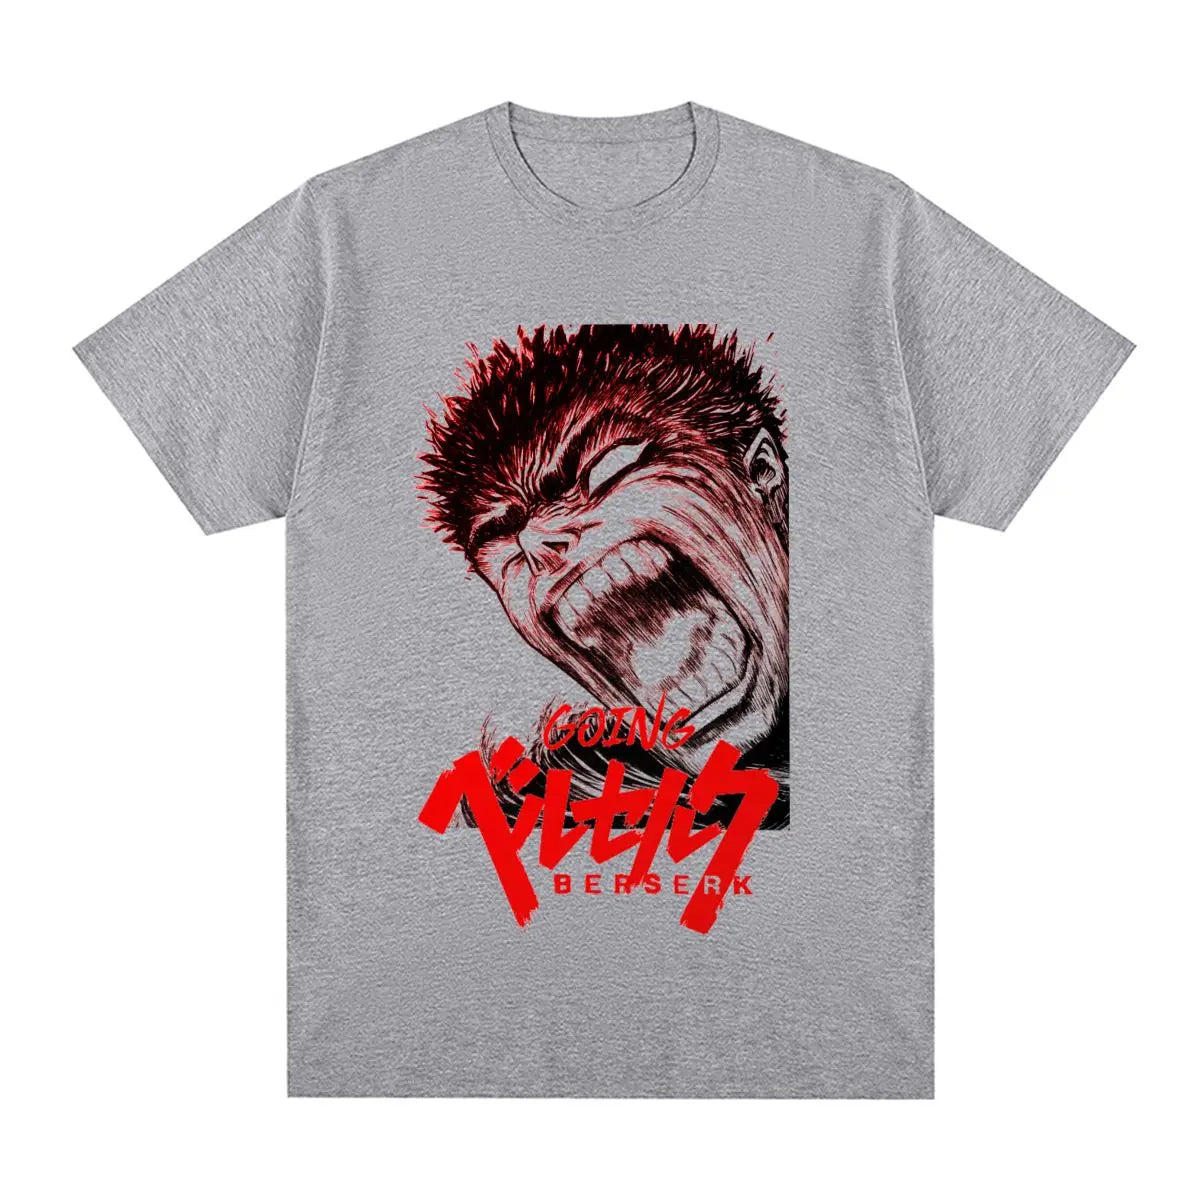 Berserk “Rage” T-Shirt - The AniStore